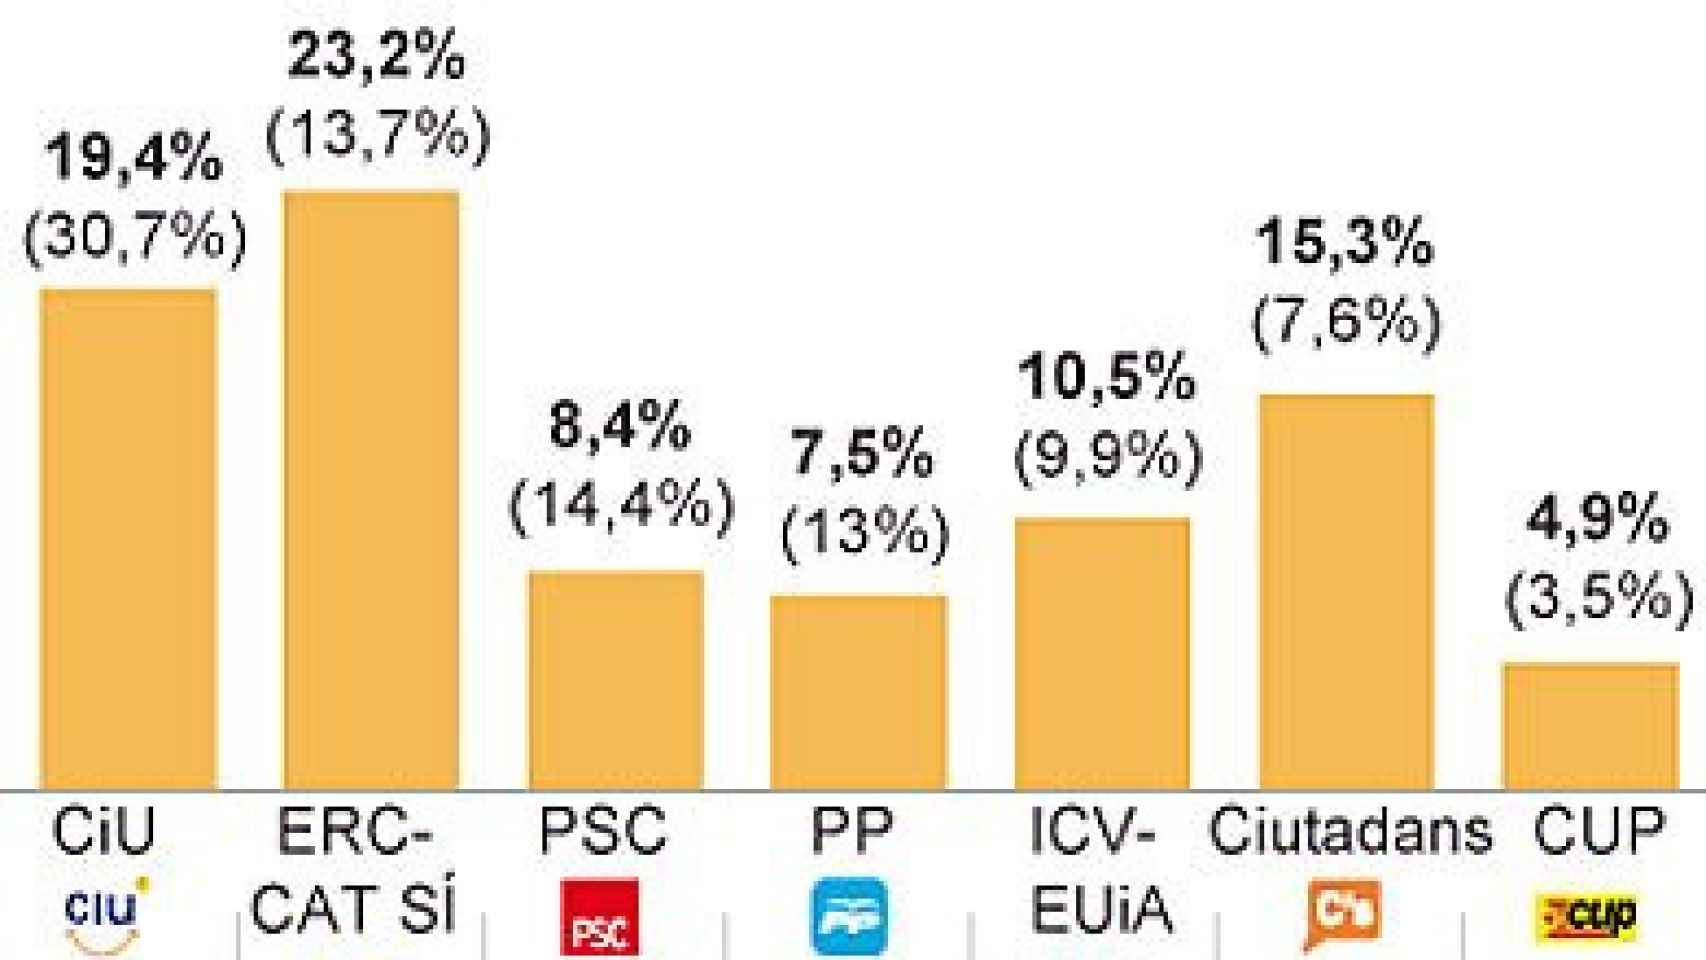 Intención de voto para unas elecciones autonómicas, según una encuesta de Metroscopia para 'El País'